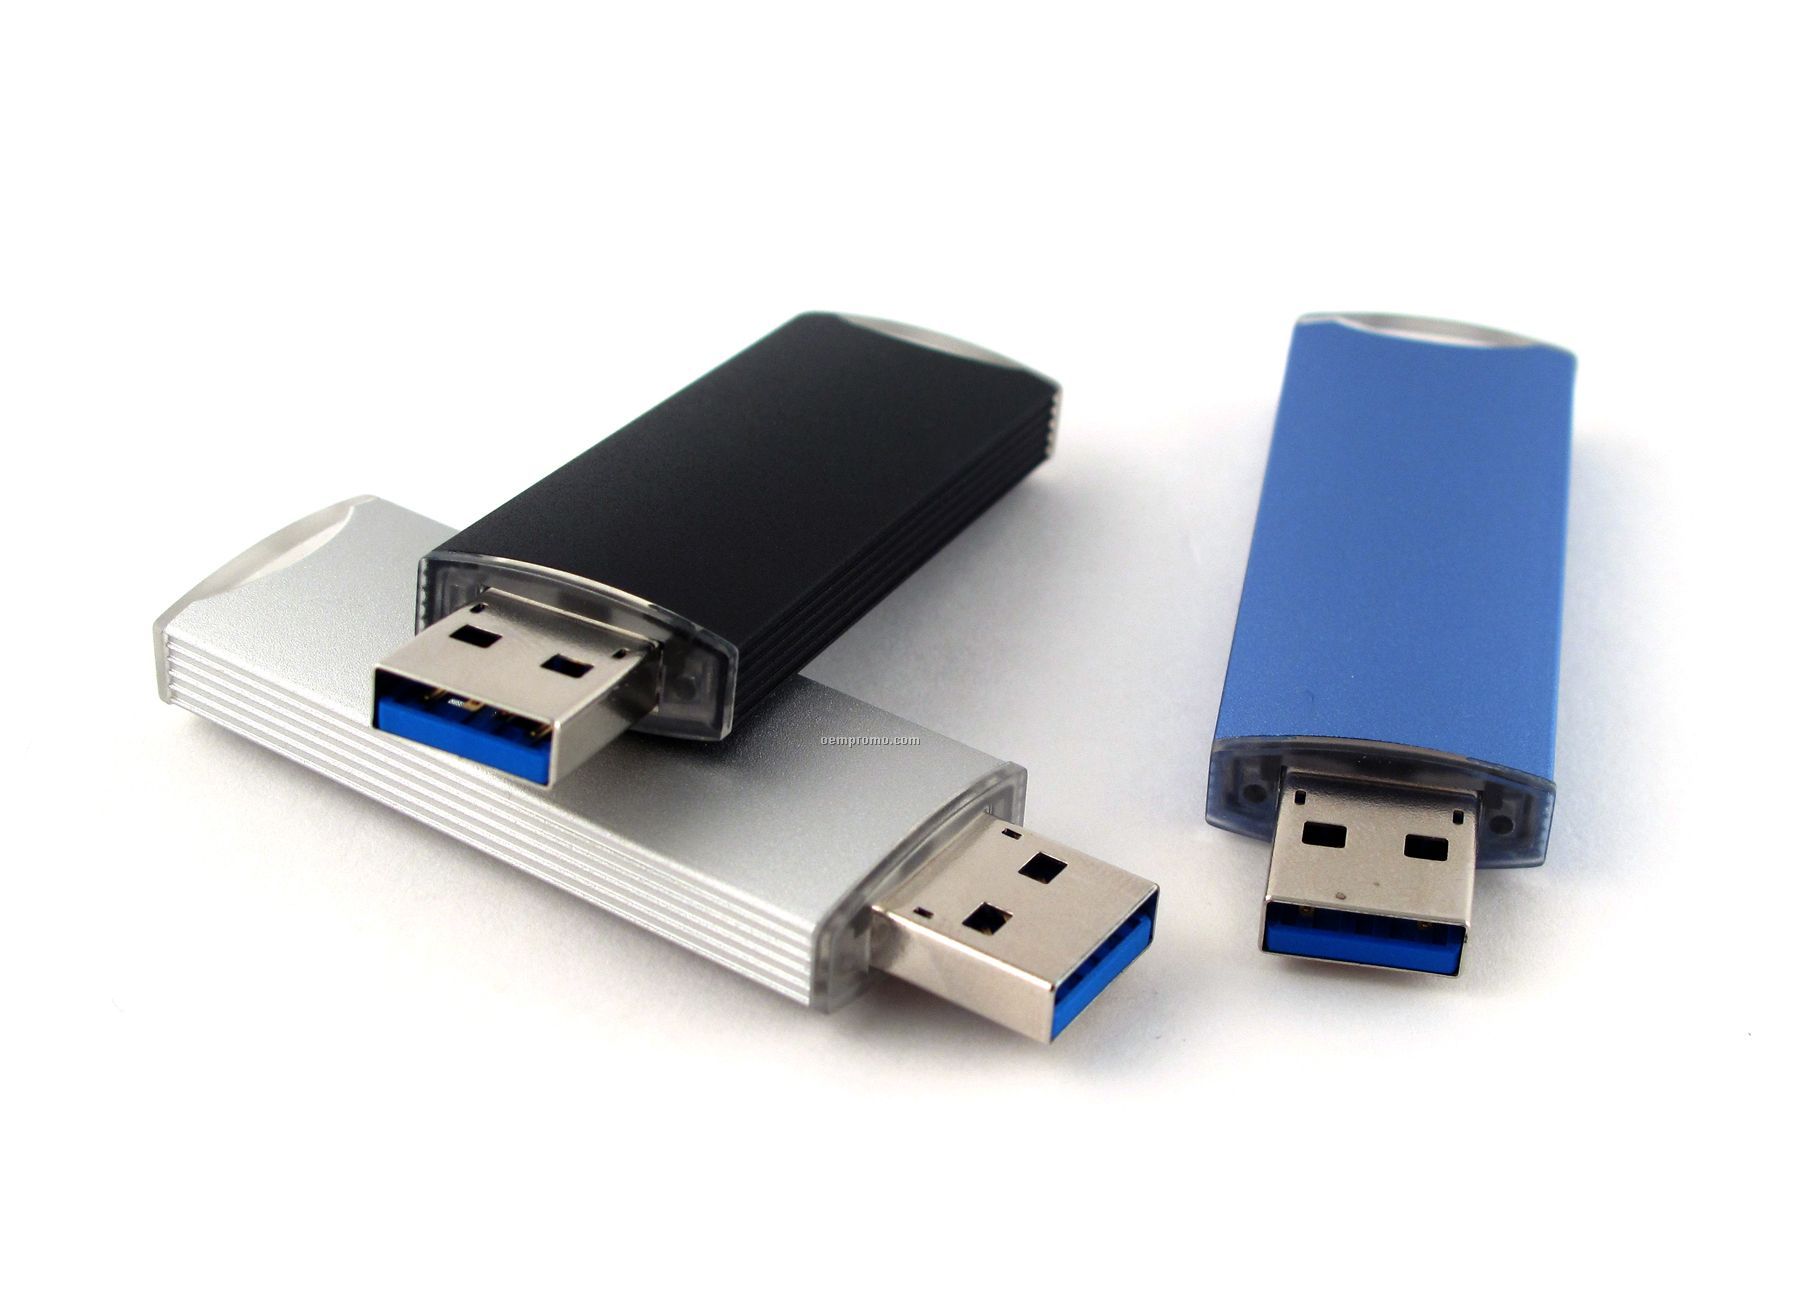 8gb Metal USB Drive 3.0 1000